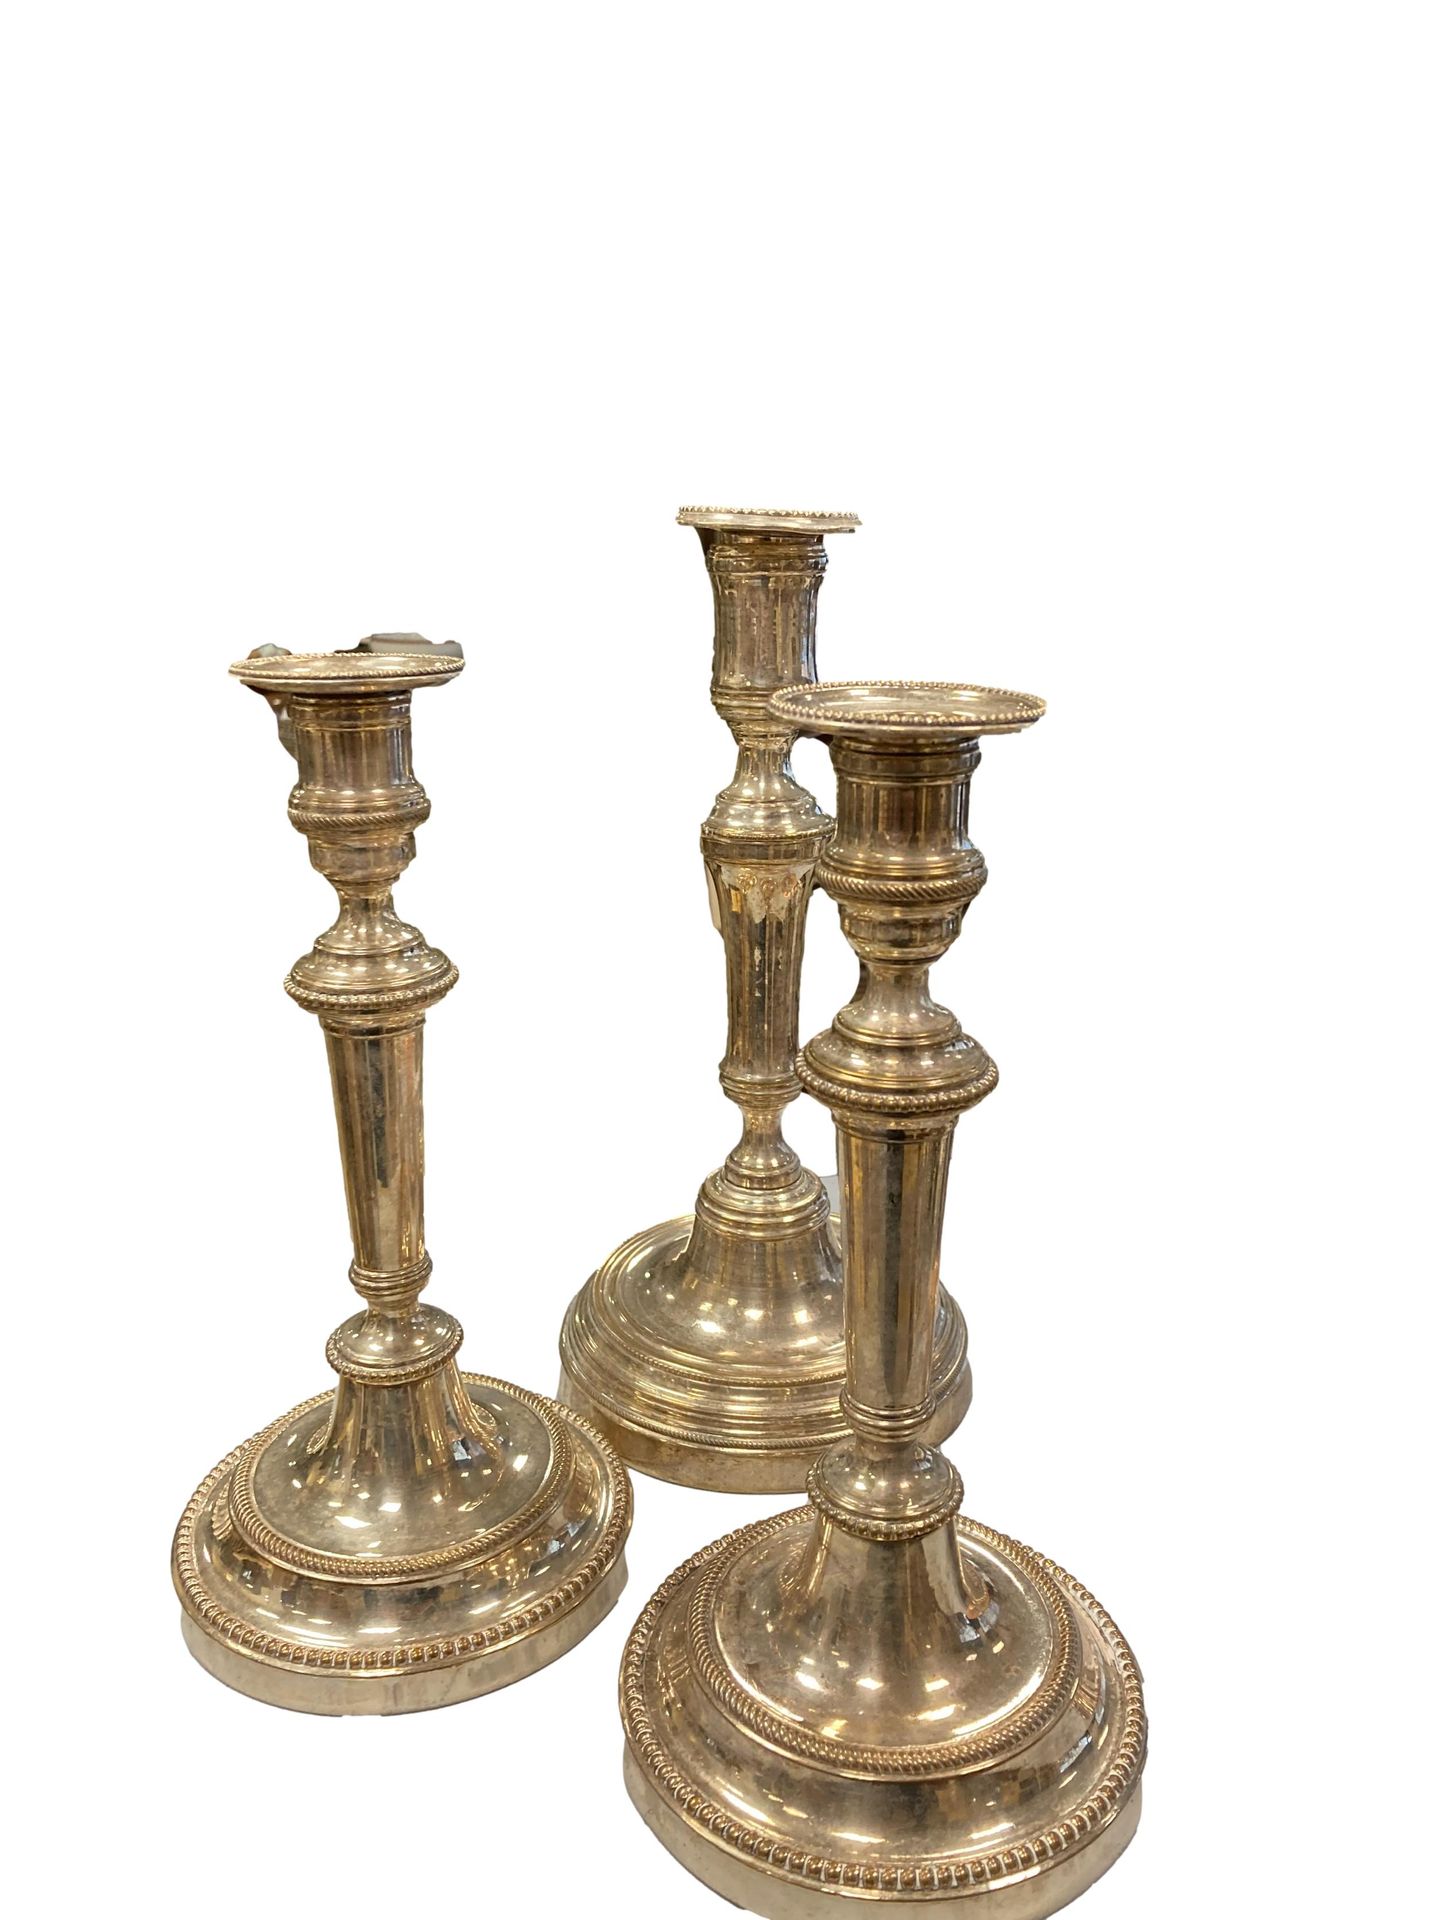 Null Juego de tres candelabros plateados con frisos de perlas

H. 25,5 y 28,5 cm